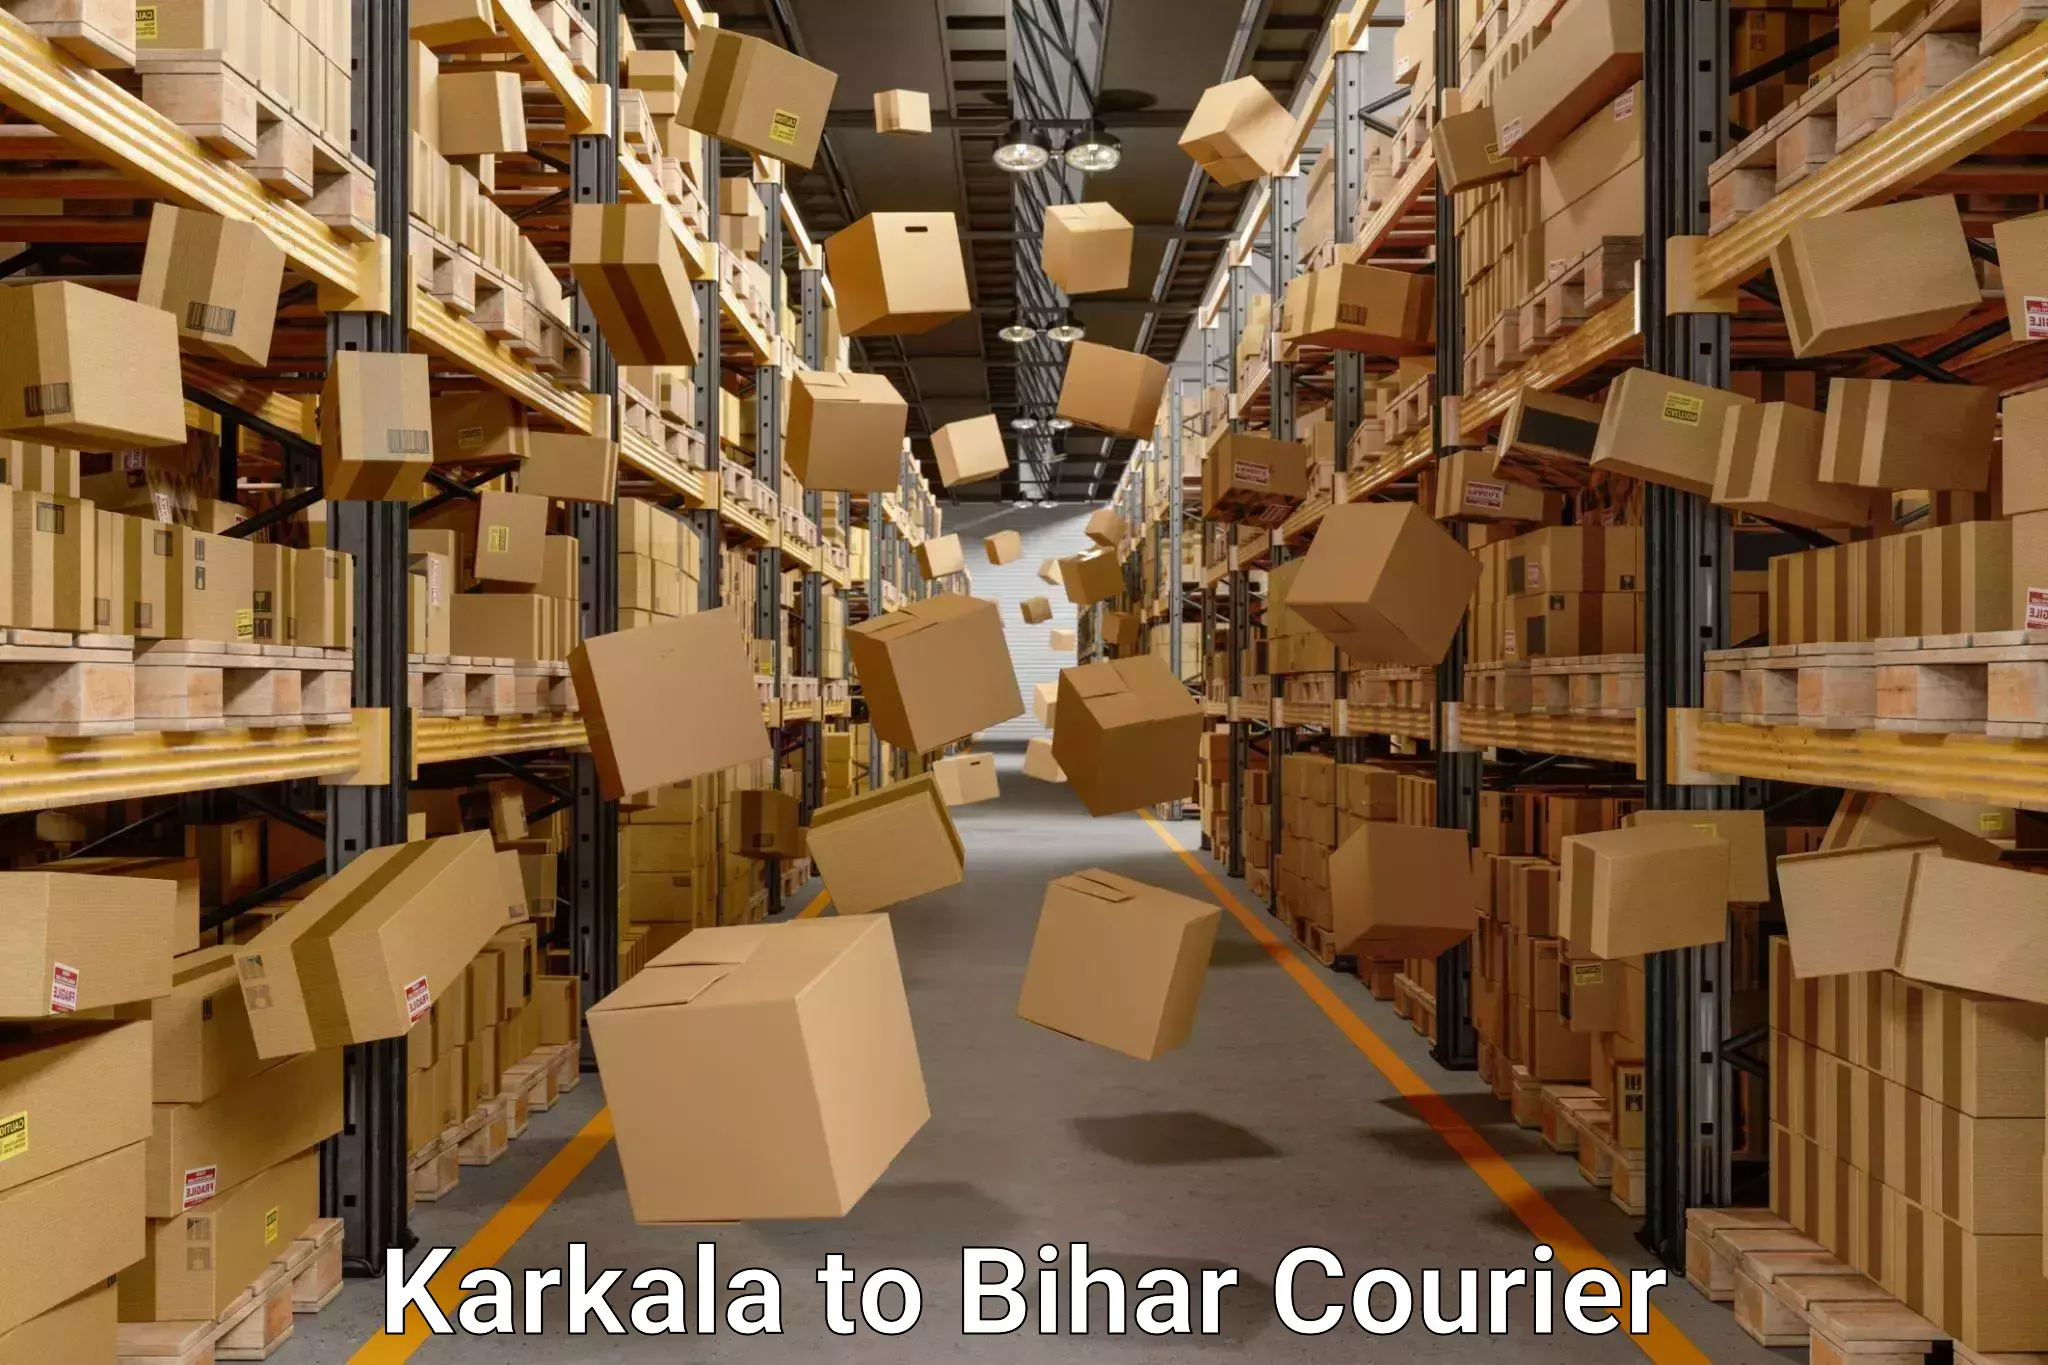 Efficient moving company Karkala to Hasanpura